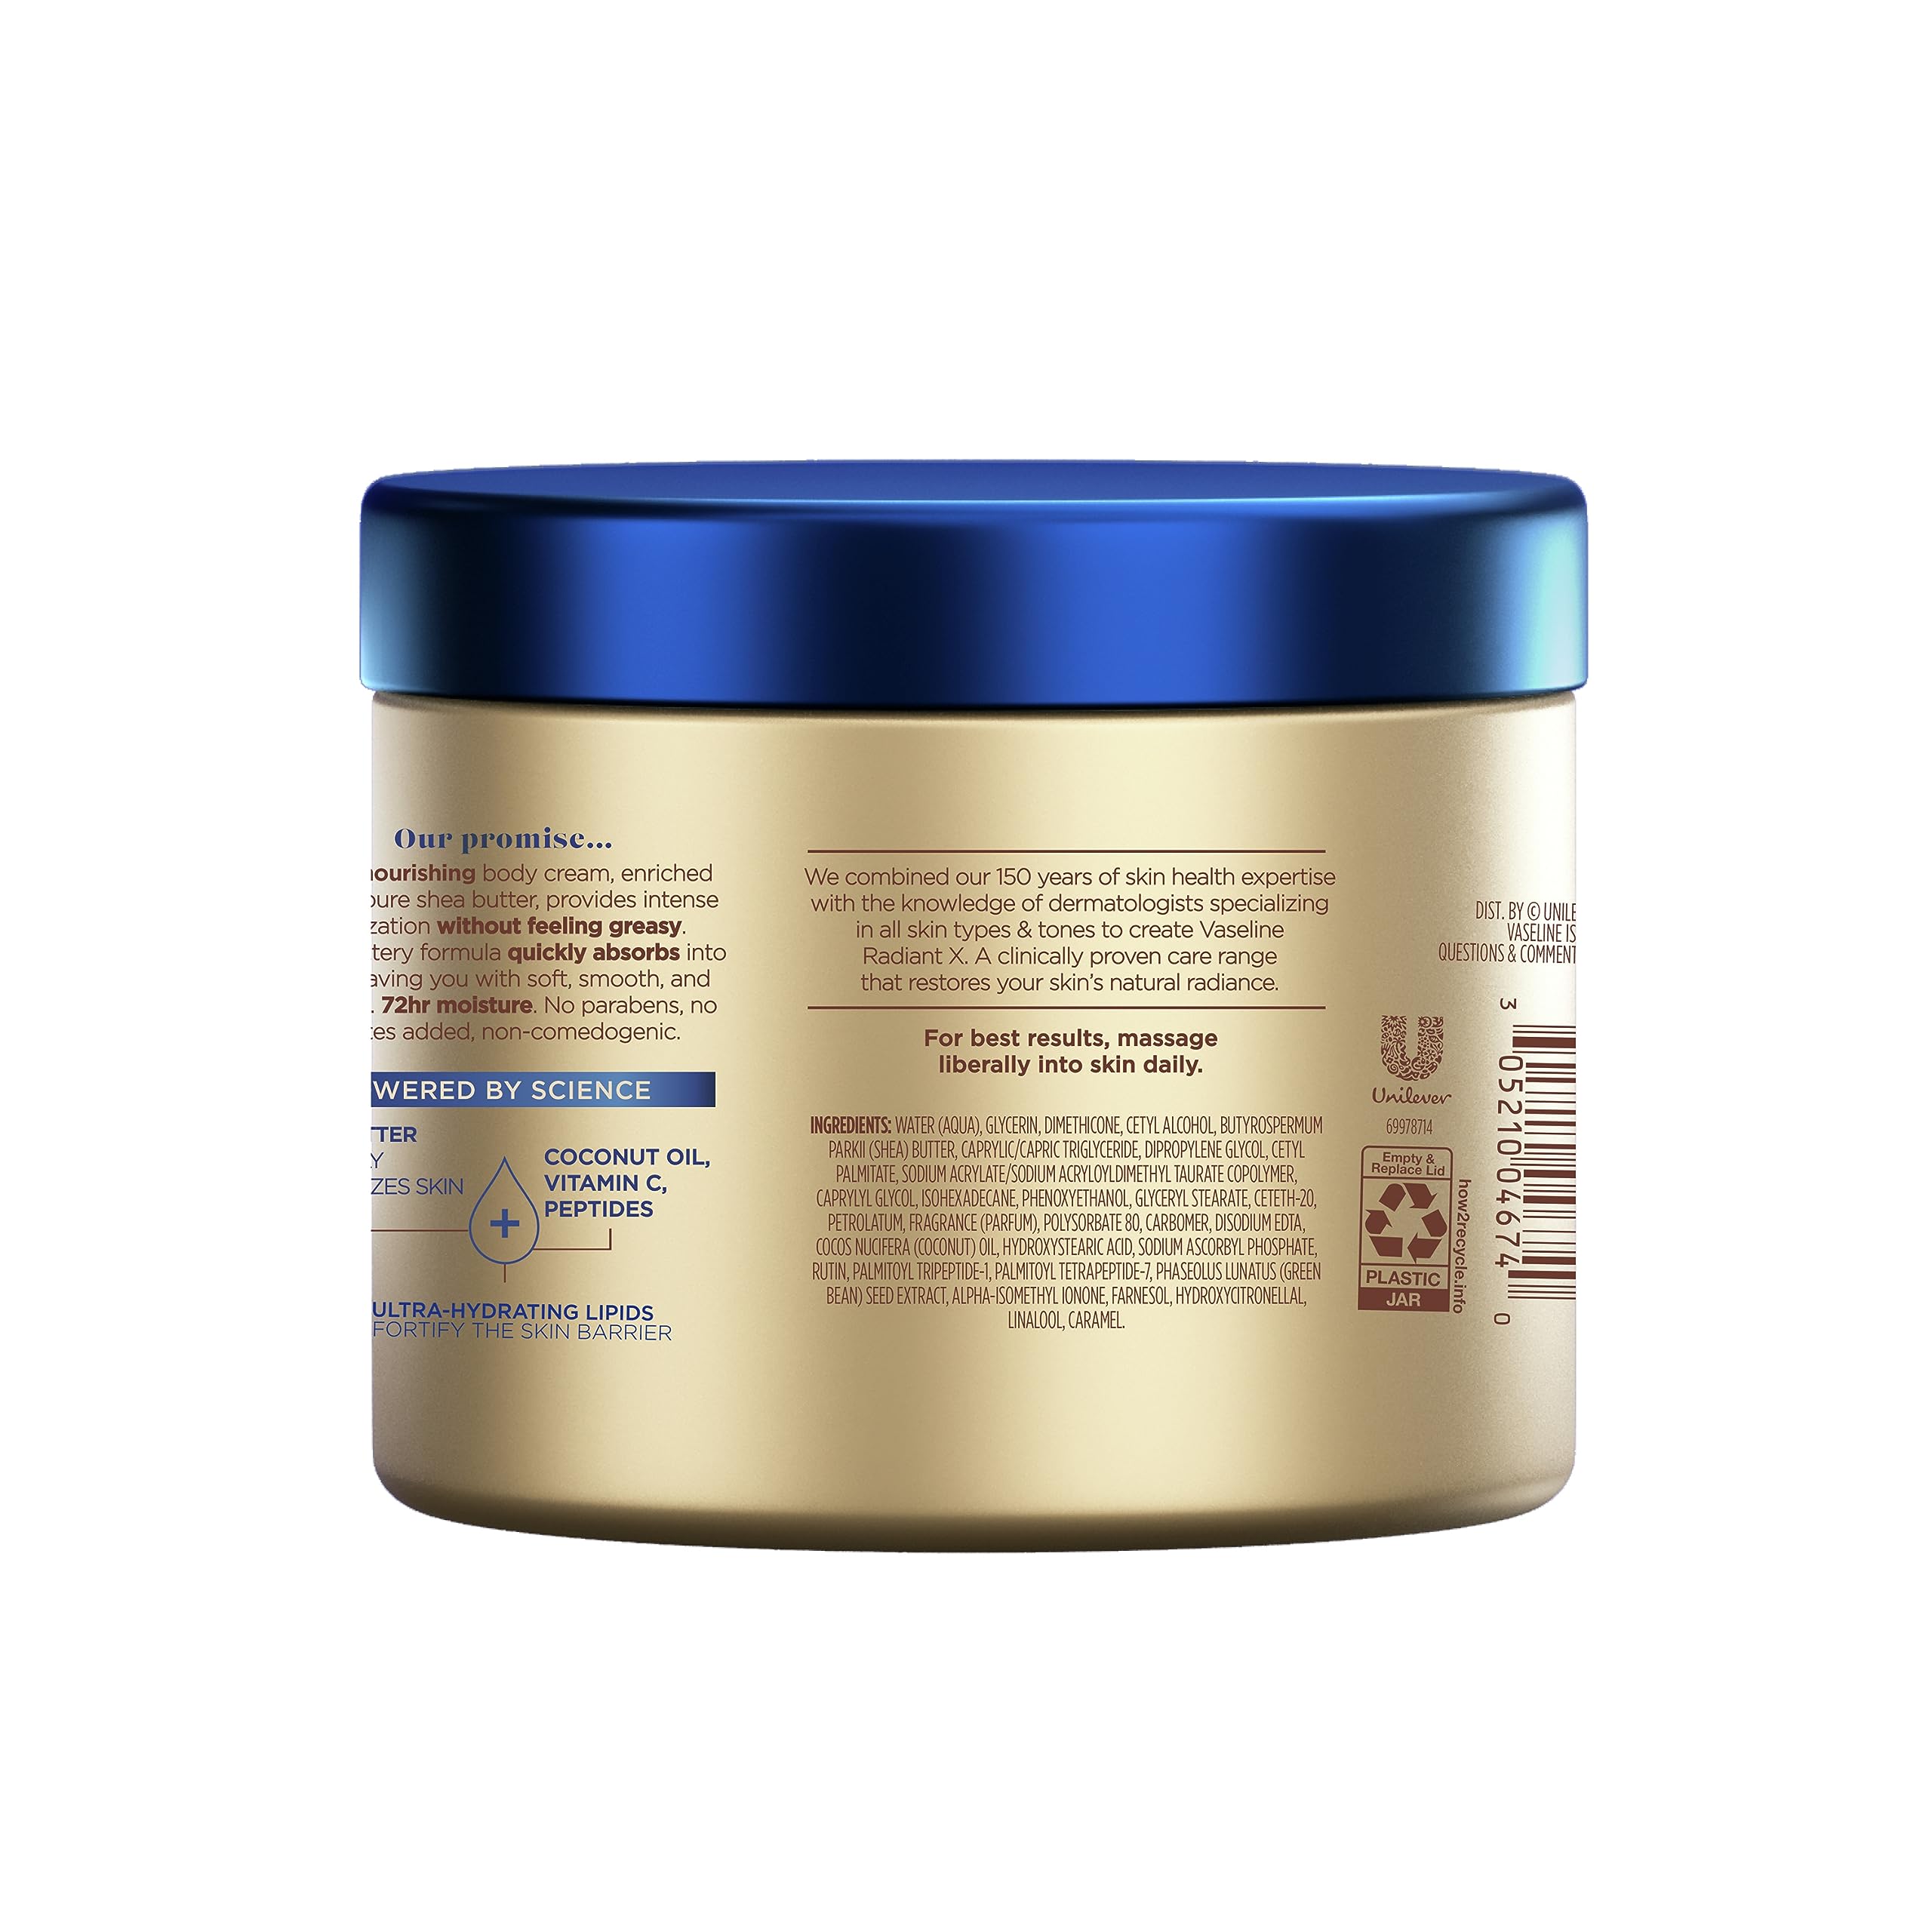 Vaseline Radiant X Deep Nourishment Body Cream 100% Pure Shea Butter, Coconut Oil, Vitamin C, & Peptides, 10 OZ